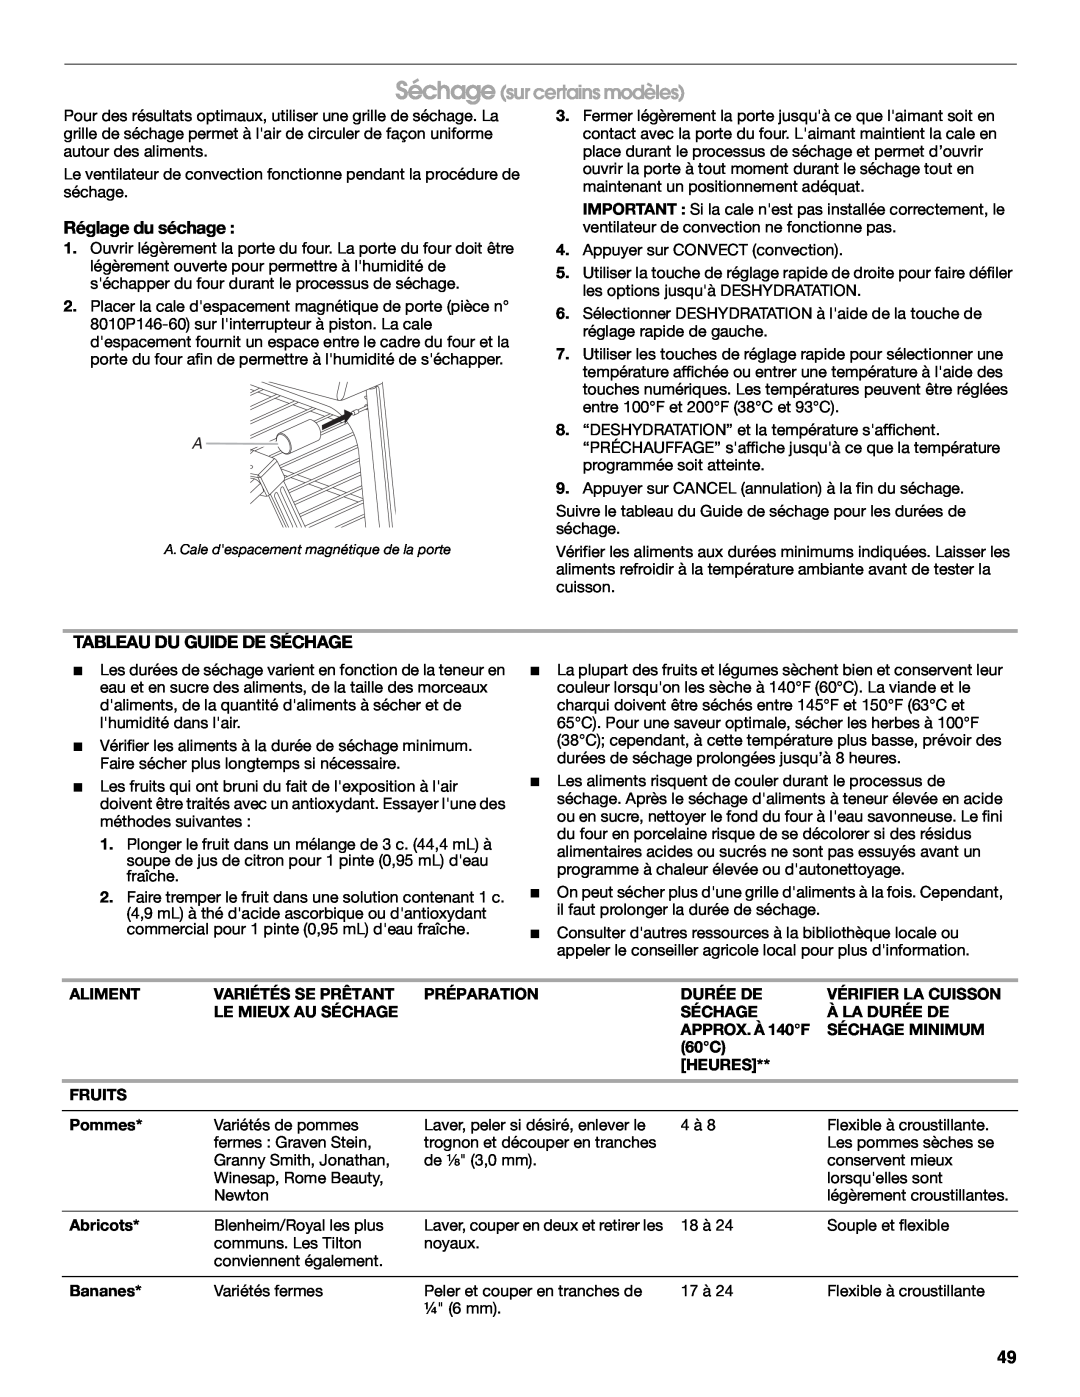 Jenn-Air JDS8850, JDS8860 manual Séchage sur certains modèles, Réglage du séchage, Tableau Du Guide De Séchage 